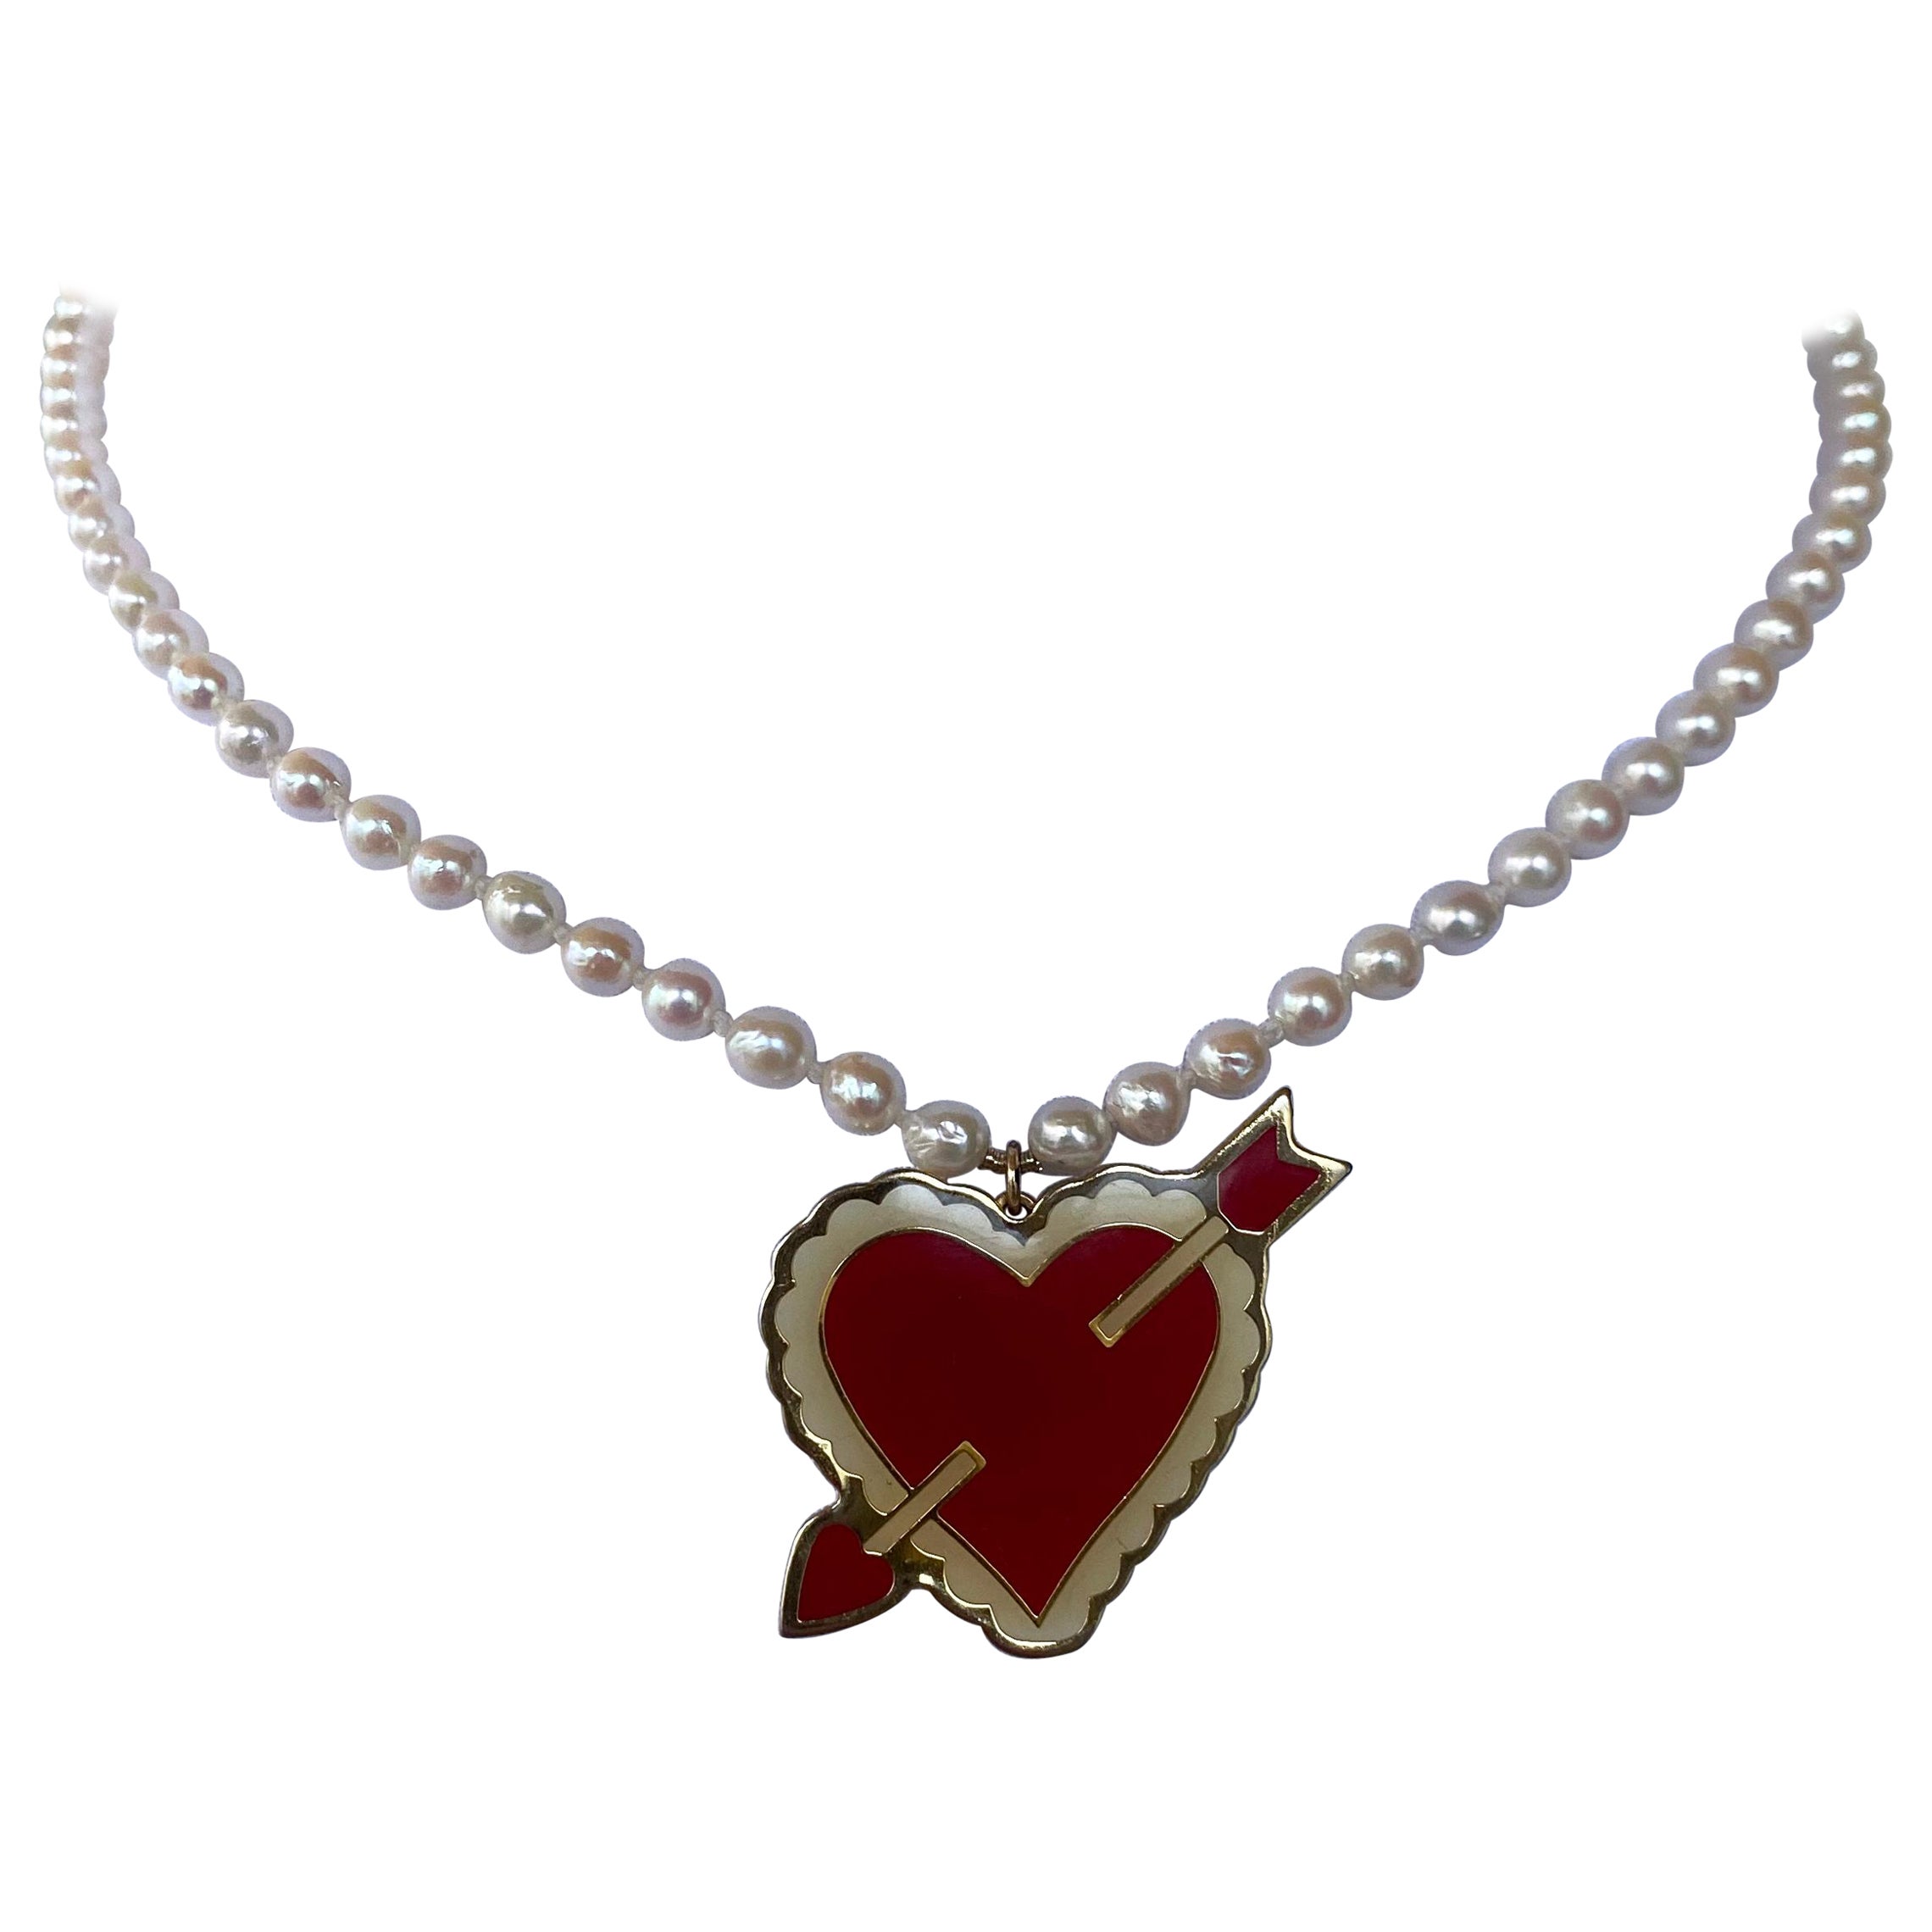 Marina J. Valentine's Perlenkette mit strukturiertem Vintage-Anhänger